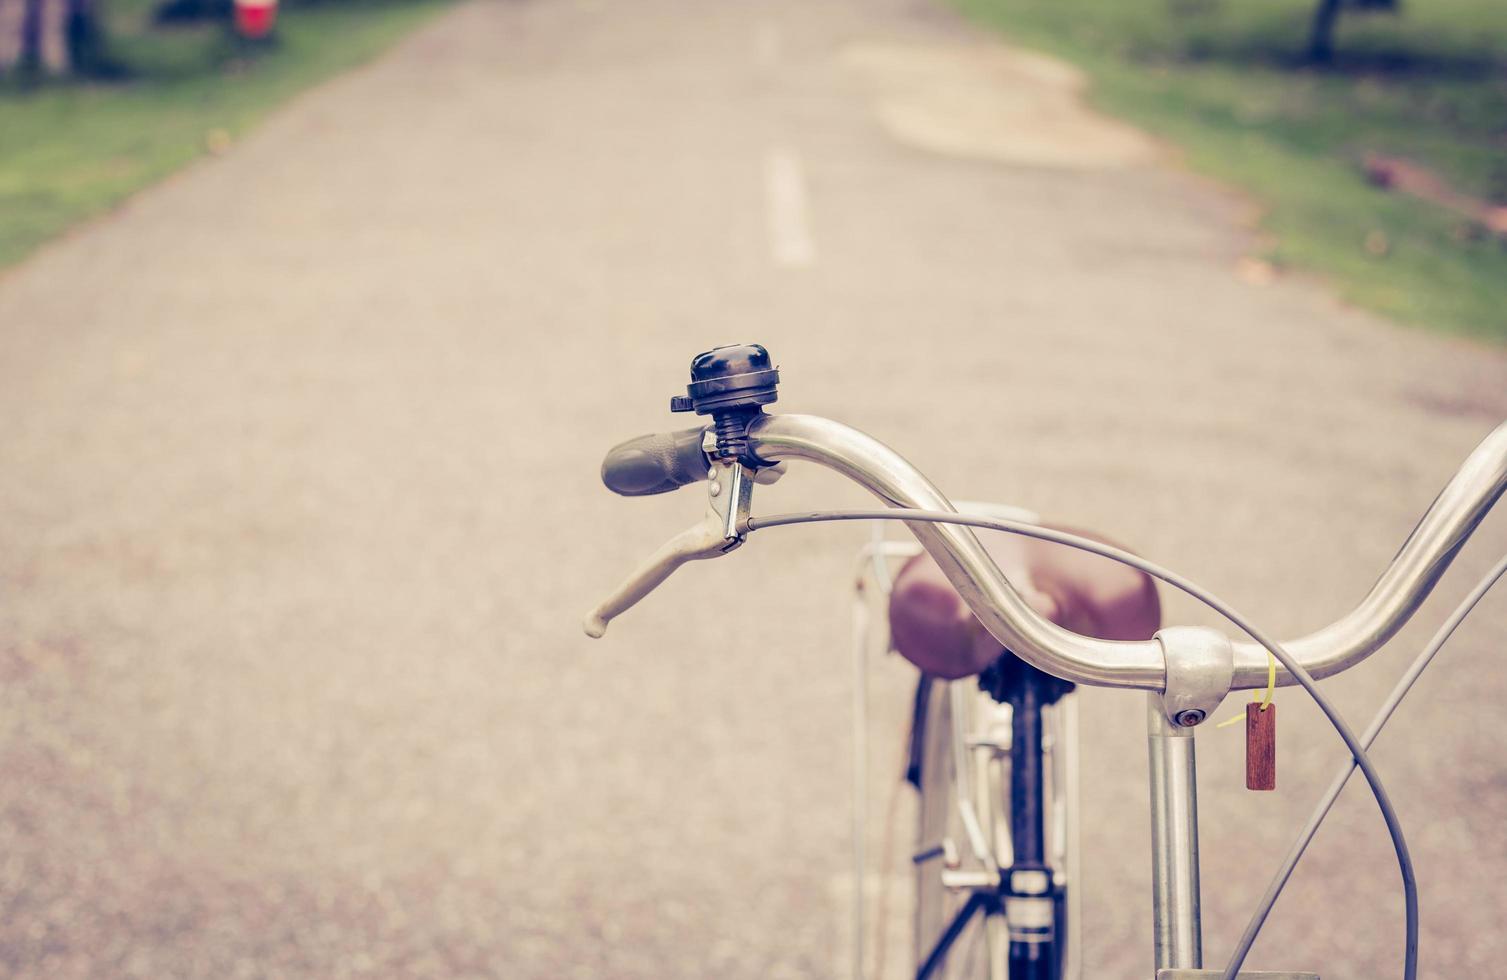 Sino e freio vintage bicicleta em estrada foto